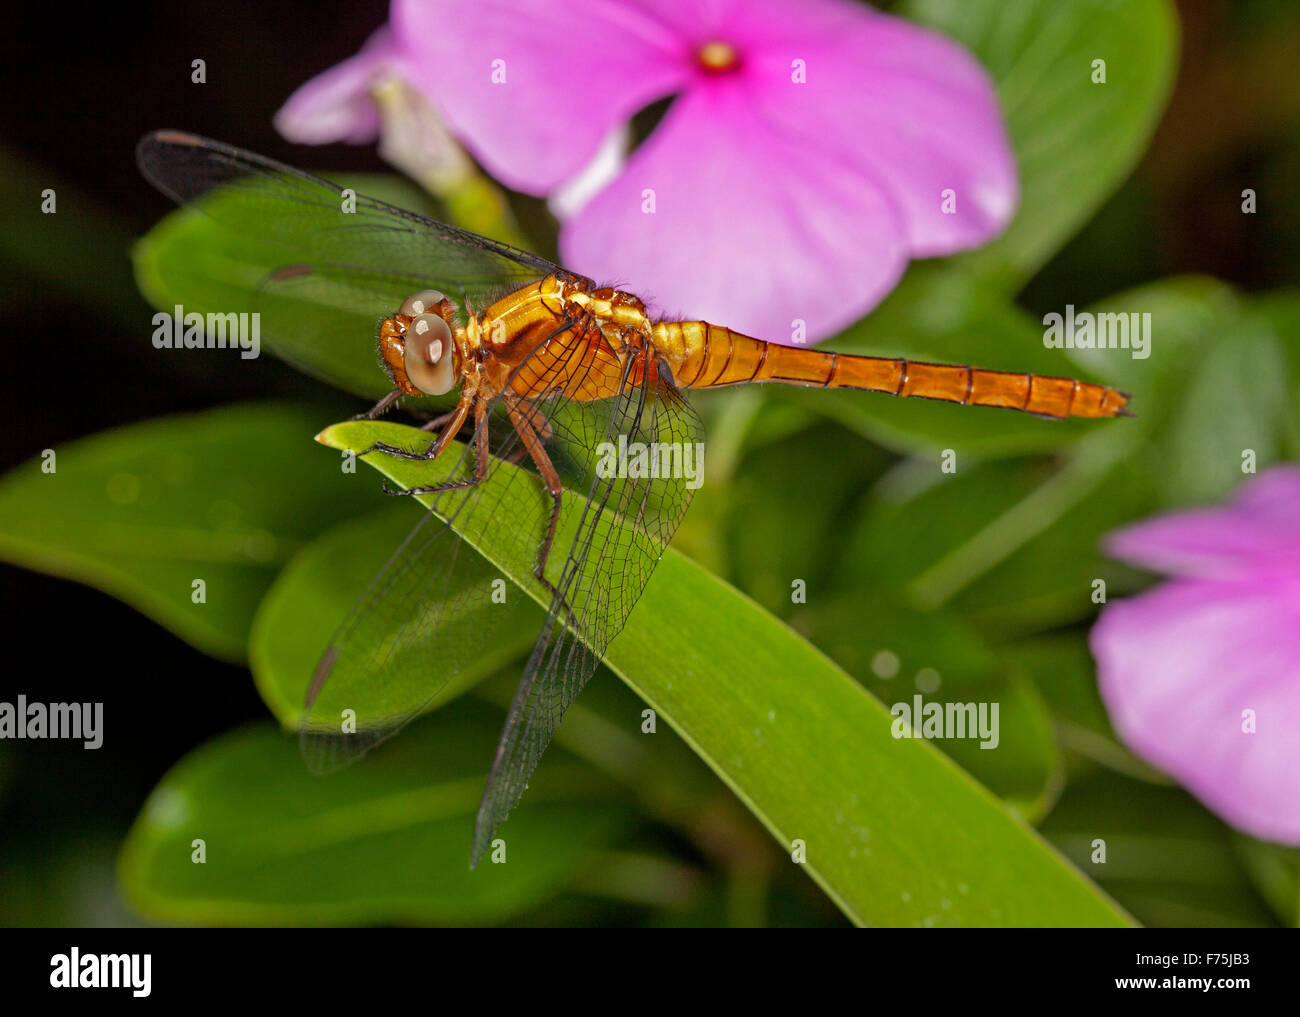 Australian Fiery dragonfly skimmer, Orthetrum villosovittatum, Corpo arancio, grandi occhi, lacy ali sulla foglia verde della pianta con fiore rosa Foto Stock